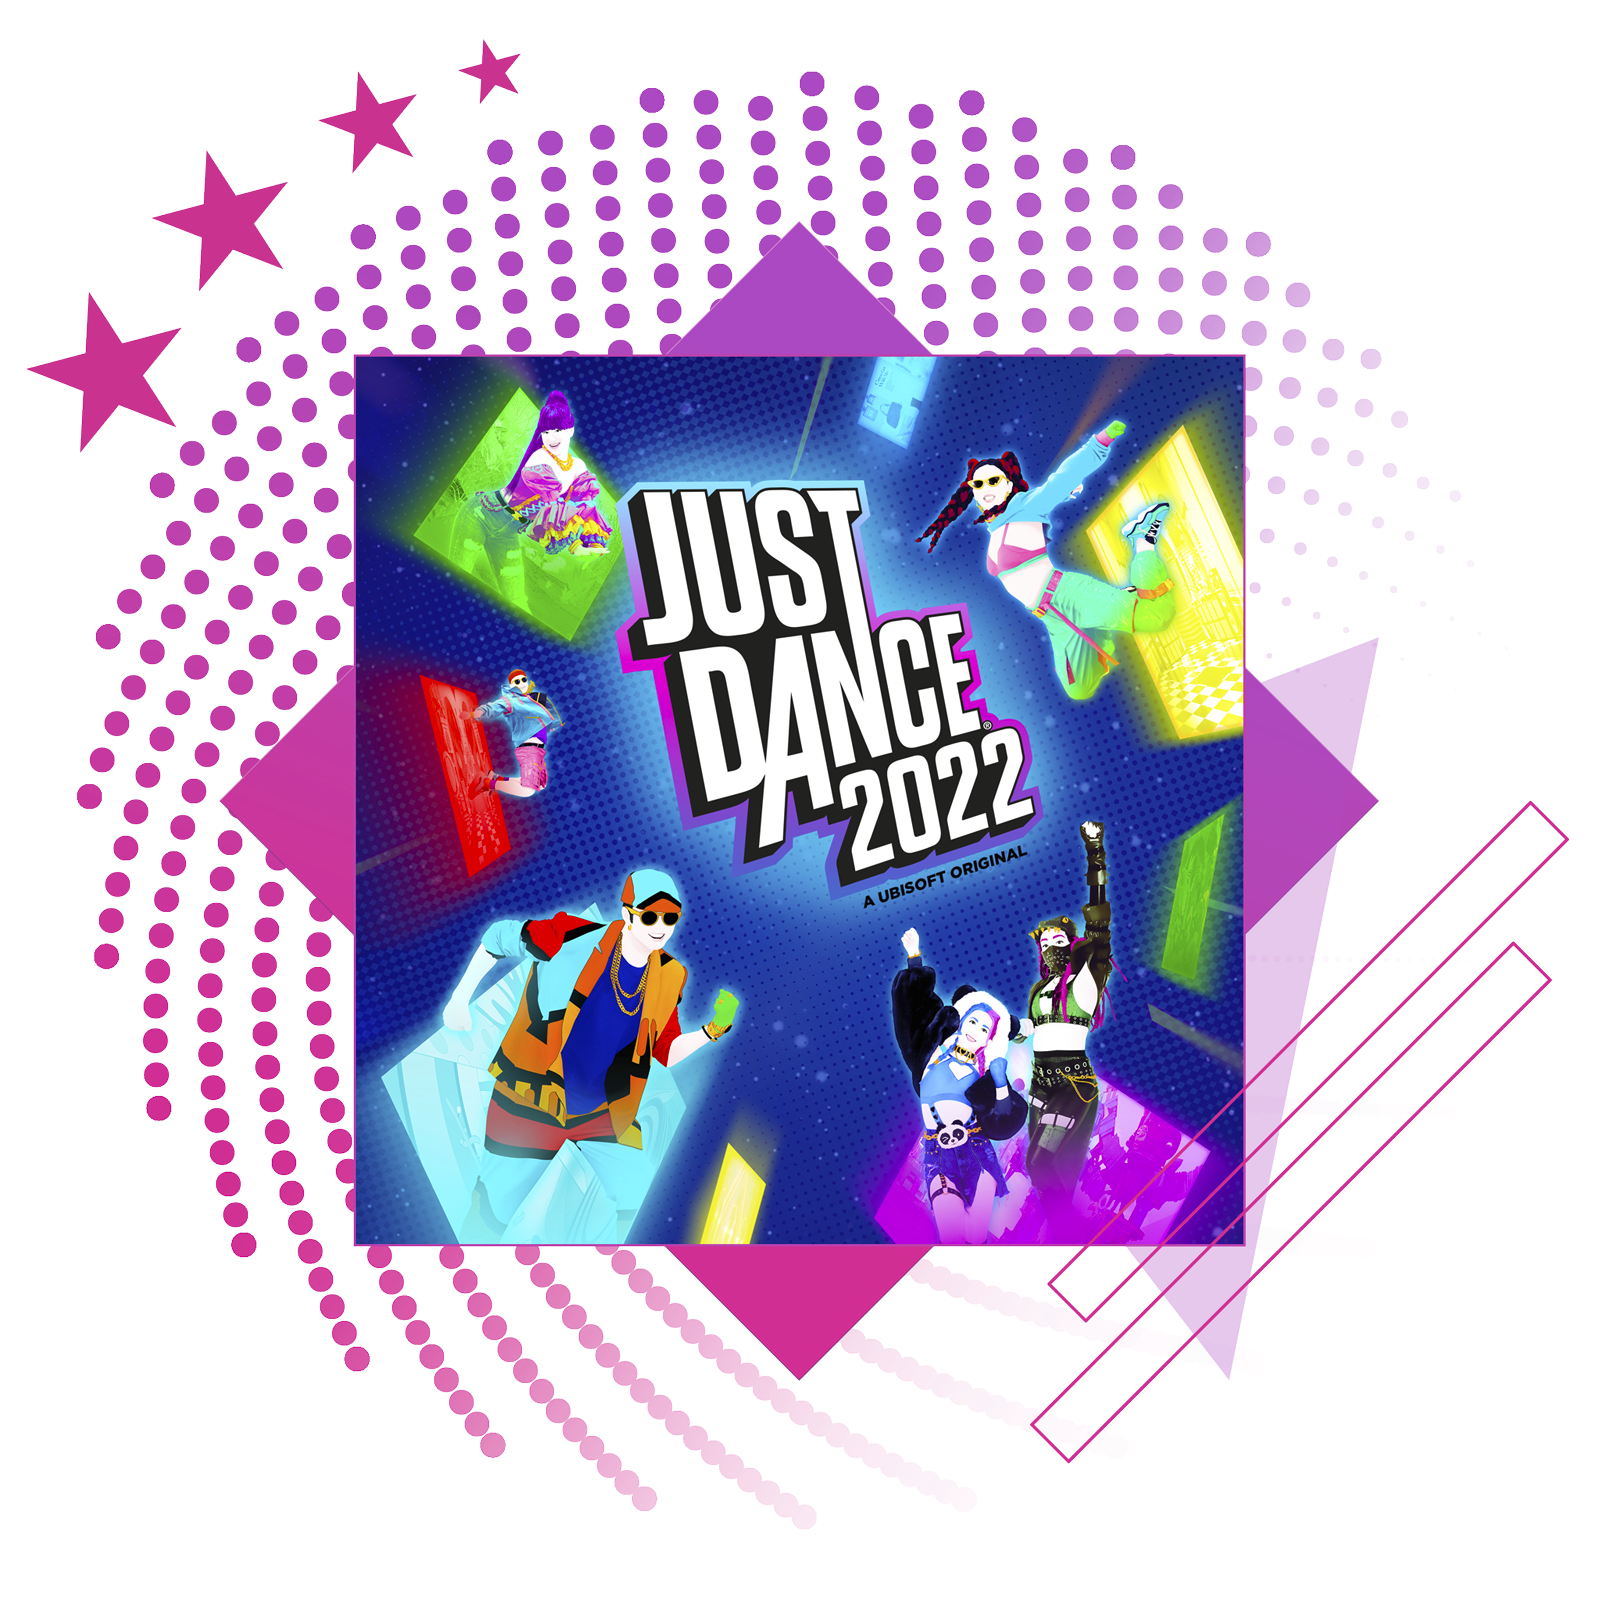 Afbeelding van De beste ritmegames met key-art van Just Dance 2022.